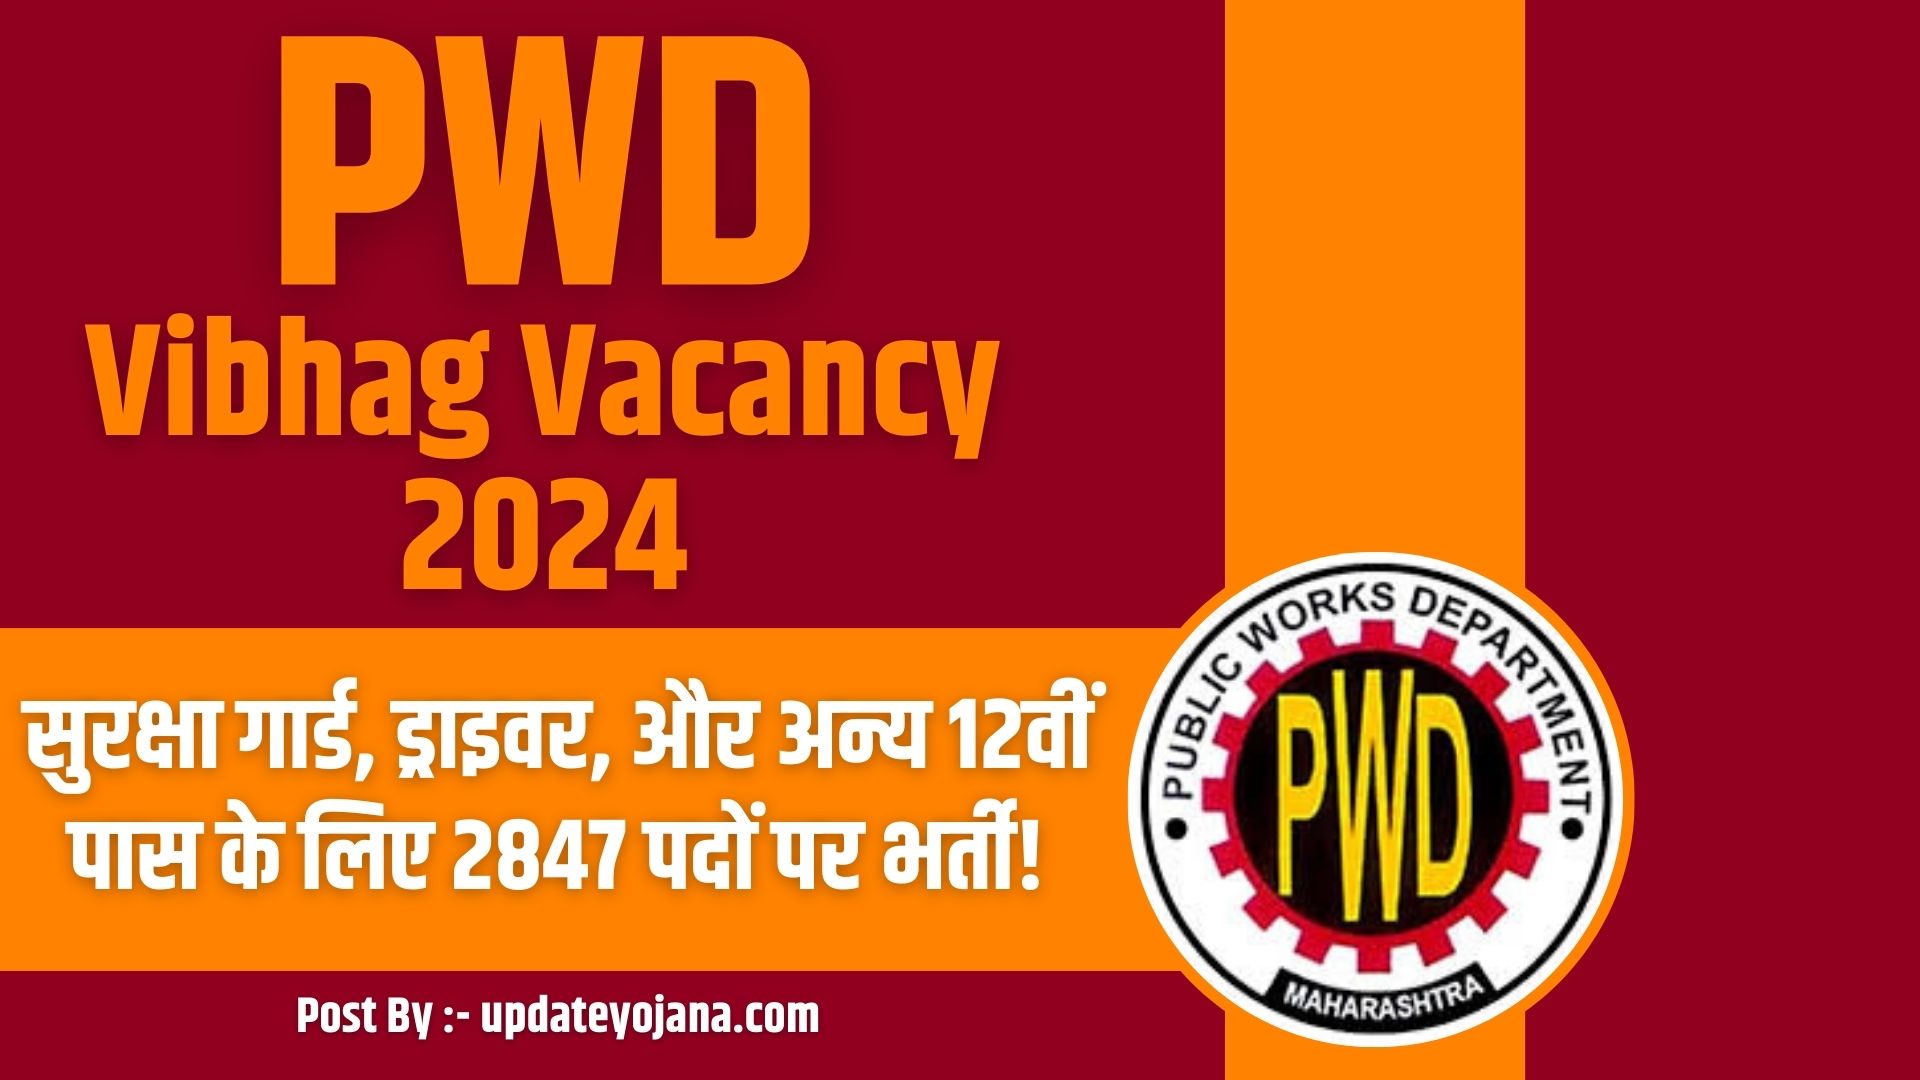 PWD Vibhag Vacancy 2024